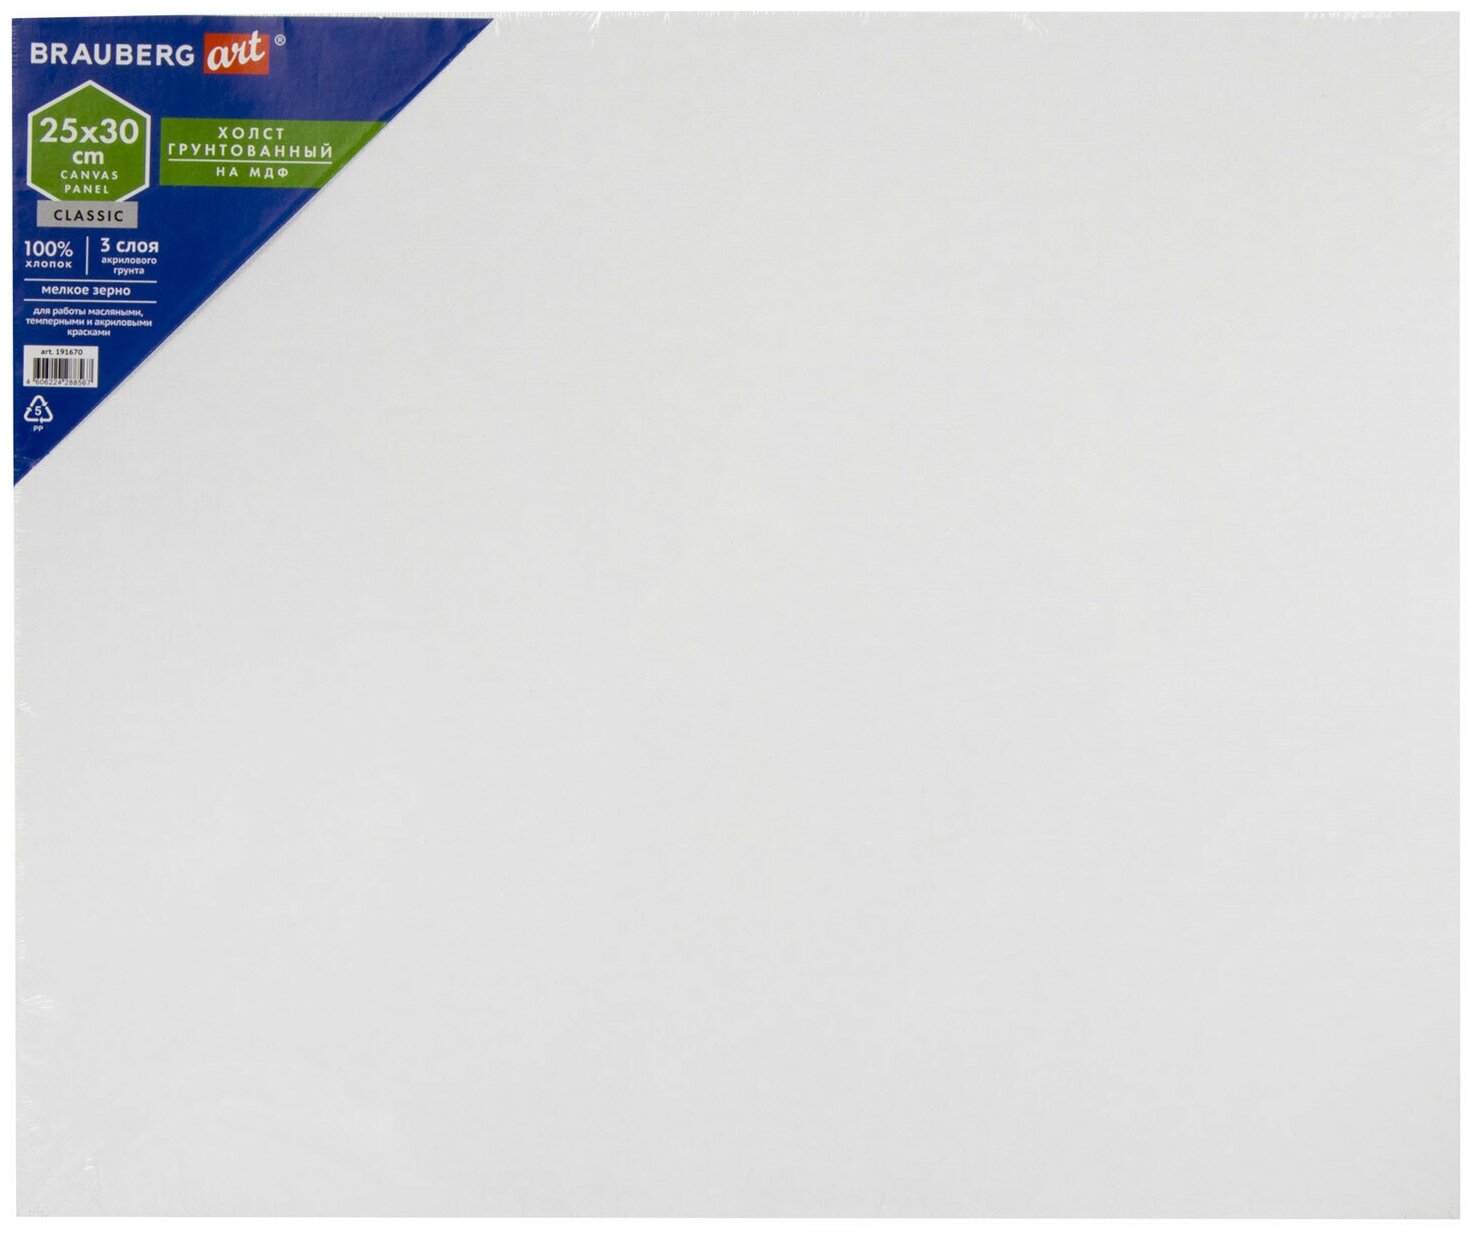 Холст грунтованный Brauberg на МДФ, Art Classic, 25х30 см, грунтованный, 100% хлопок, мелкое зерно (191670)